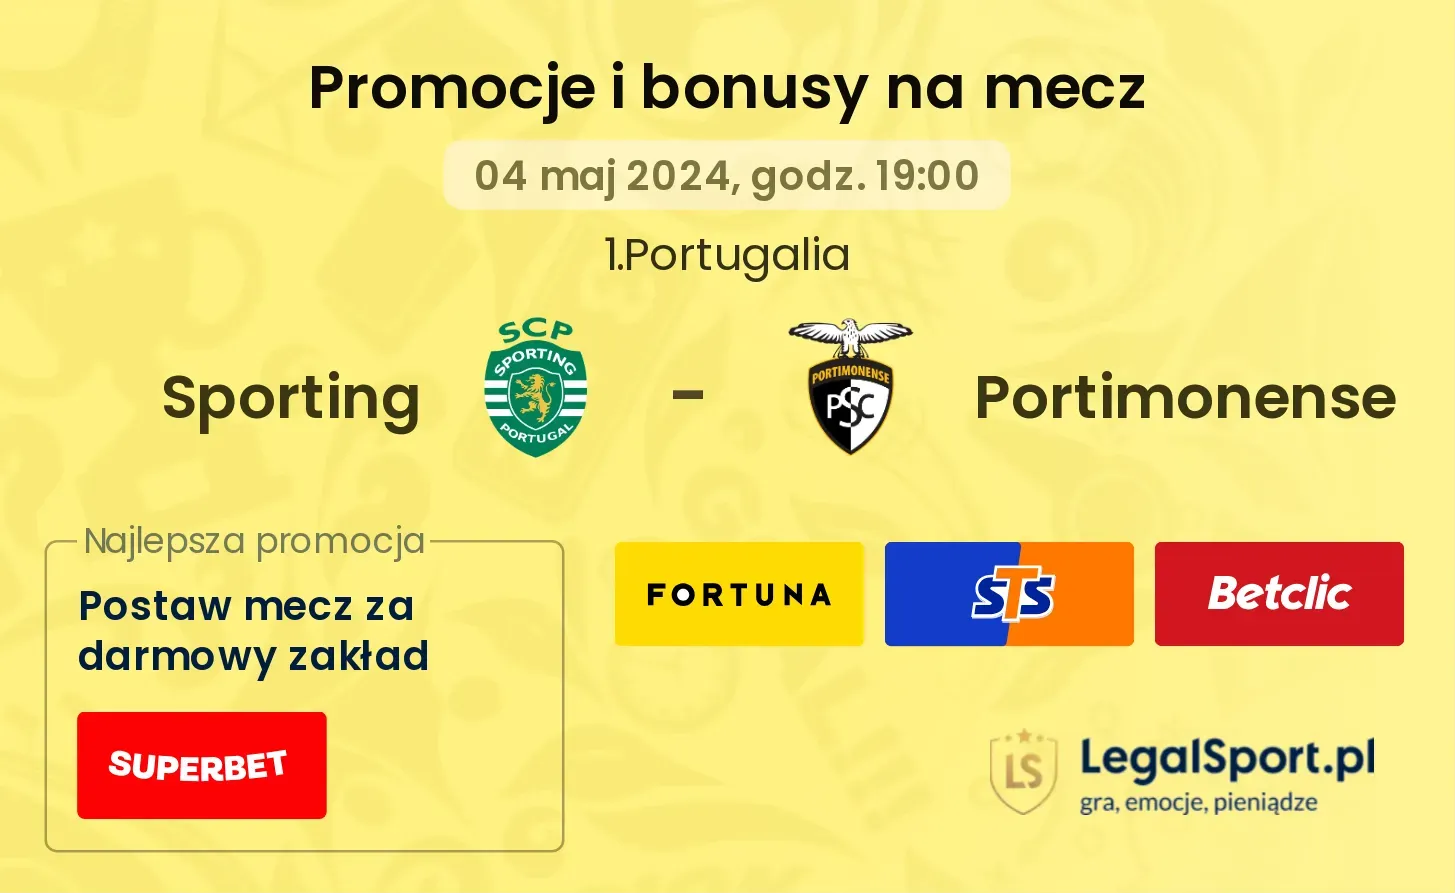 Sporting - Portimonense promocje bonusy na mecz